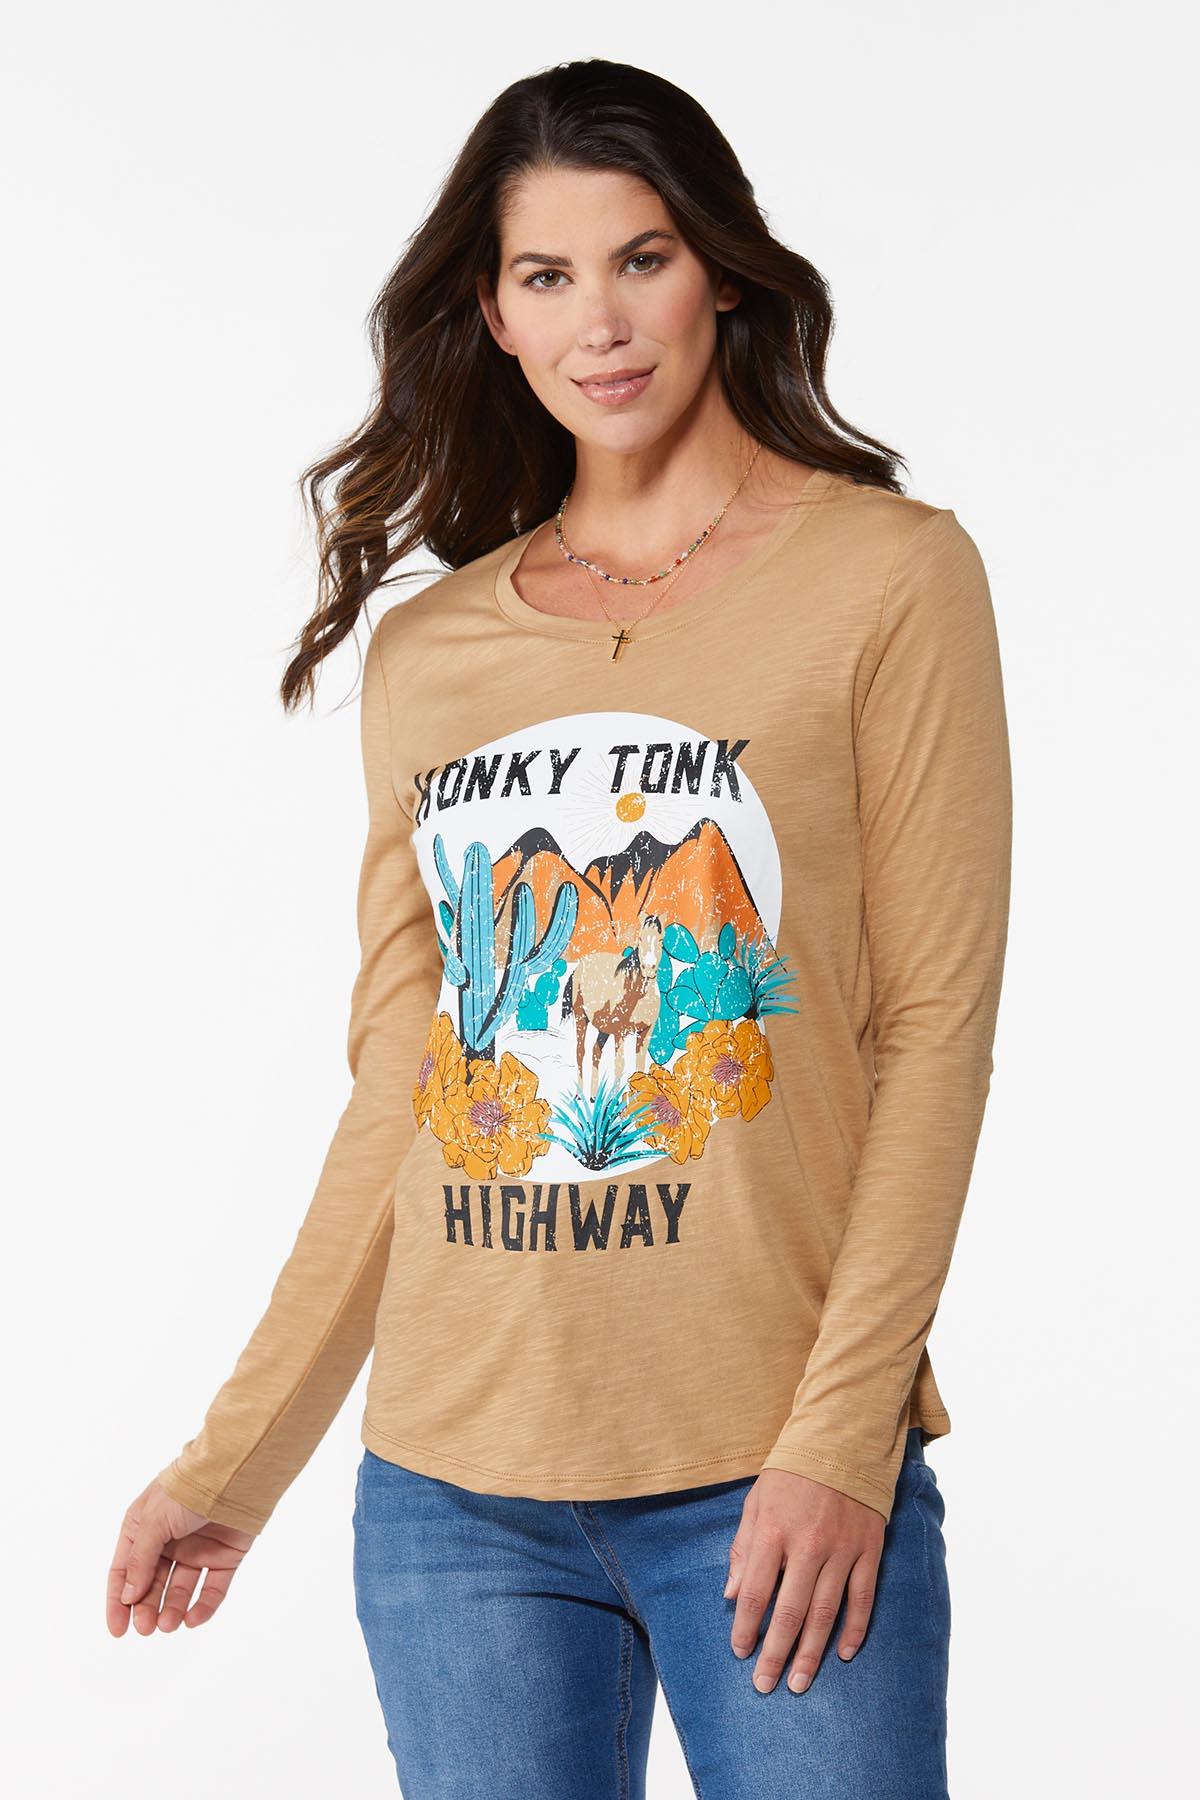 Honky Tonk Highway Top